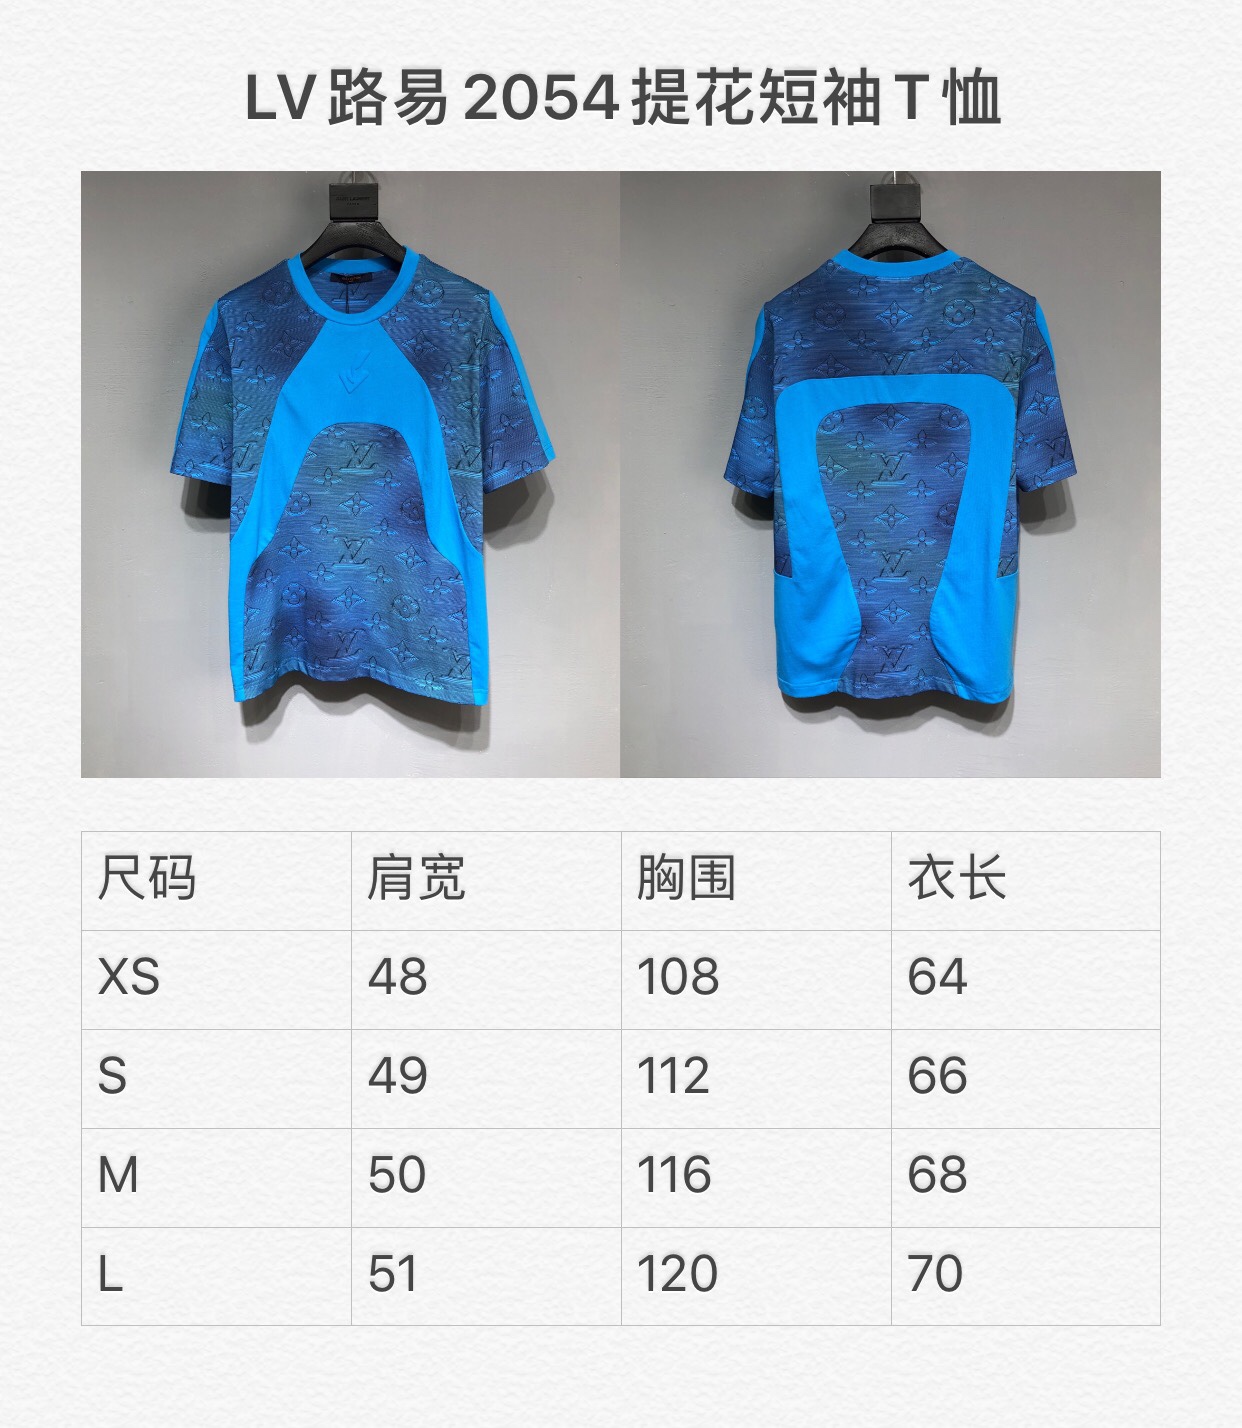 LV 2054 new Tshirt